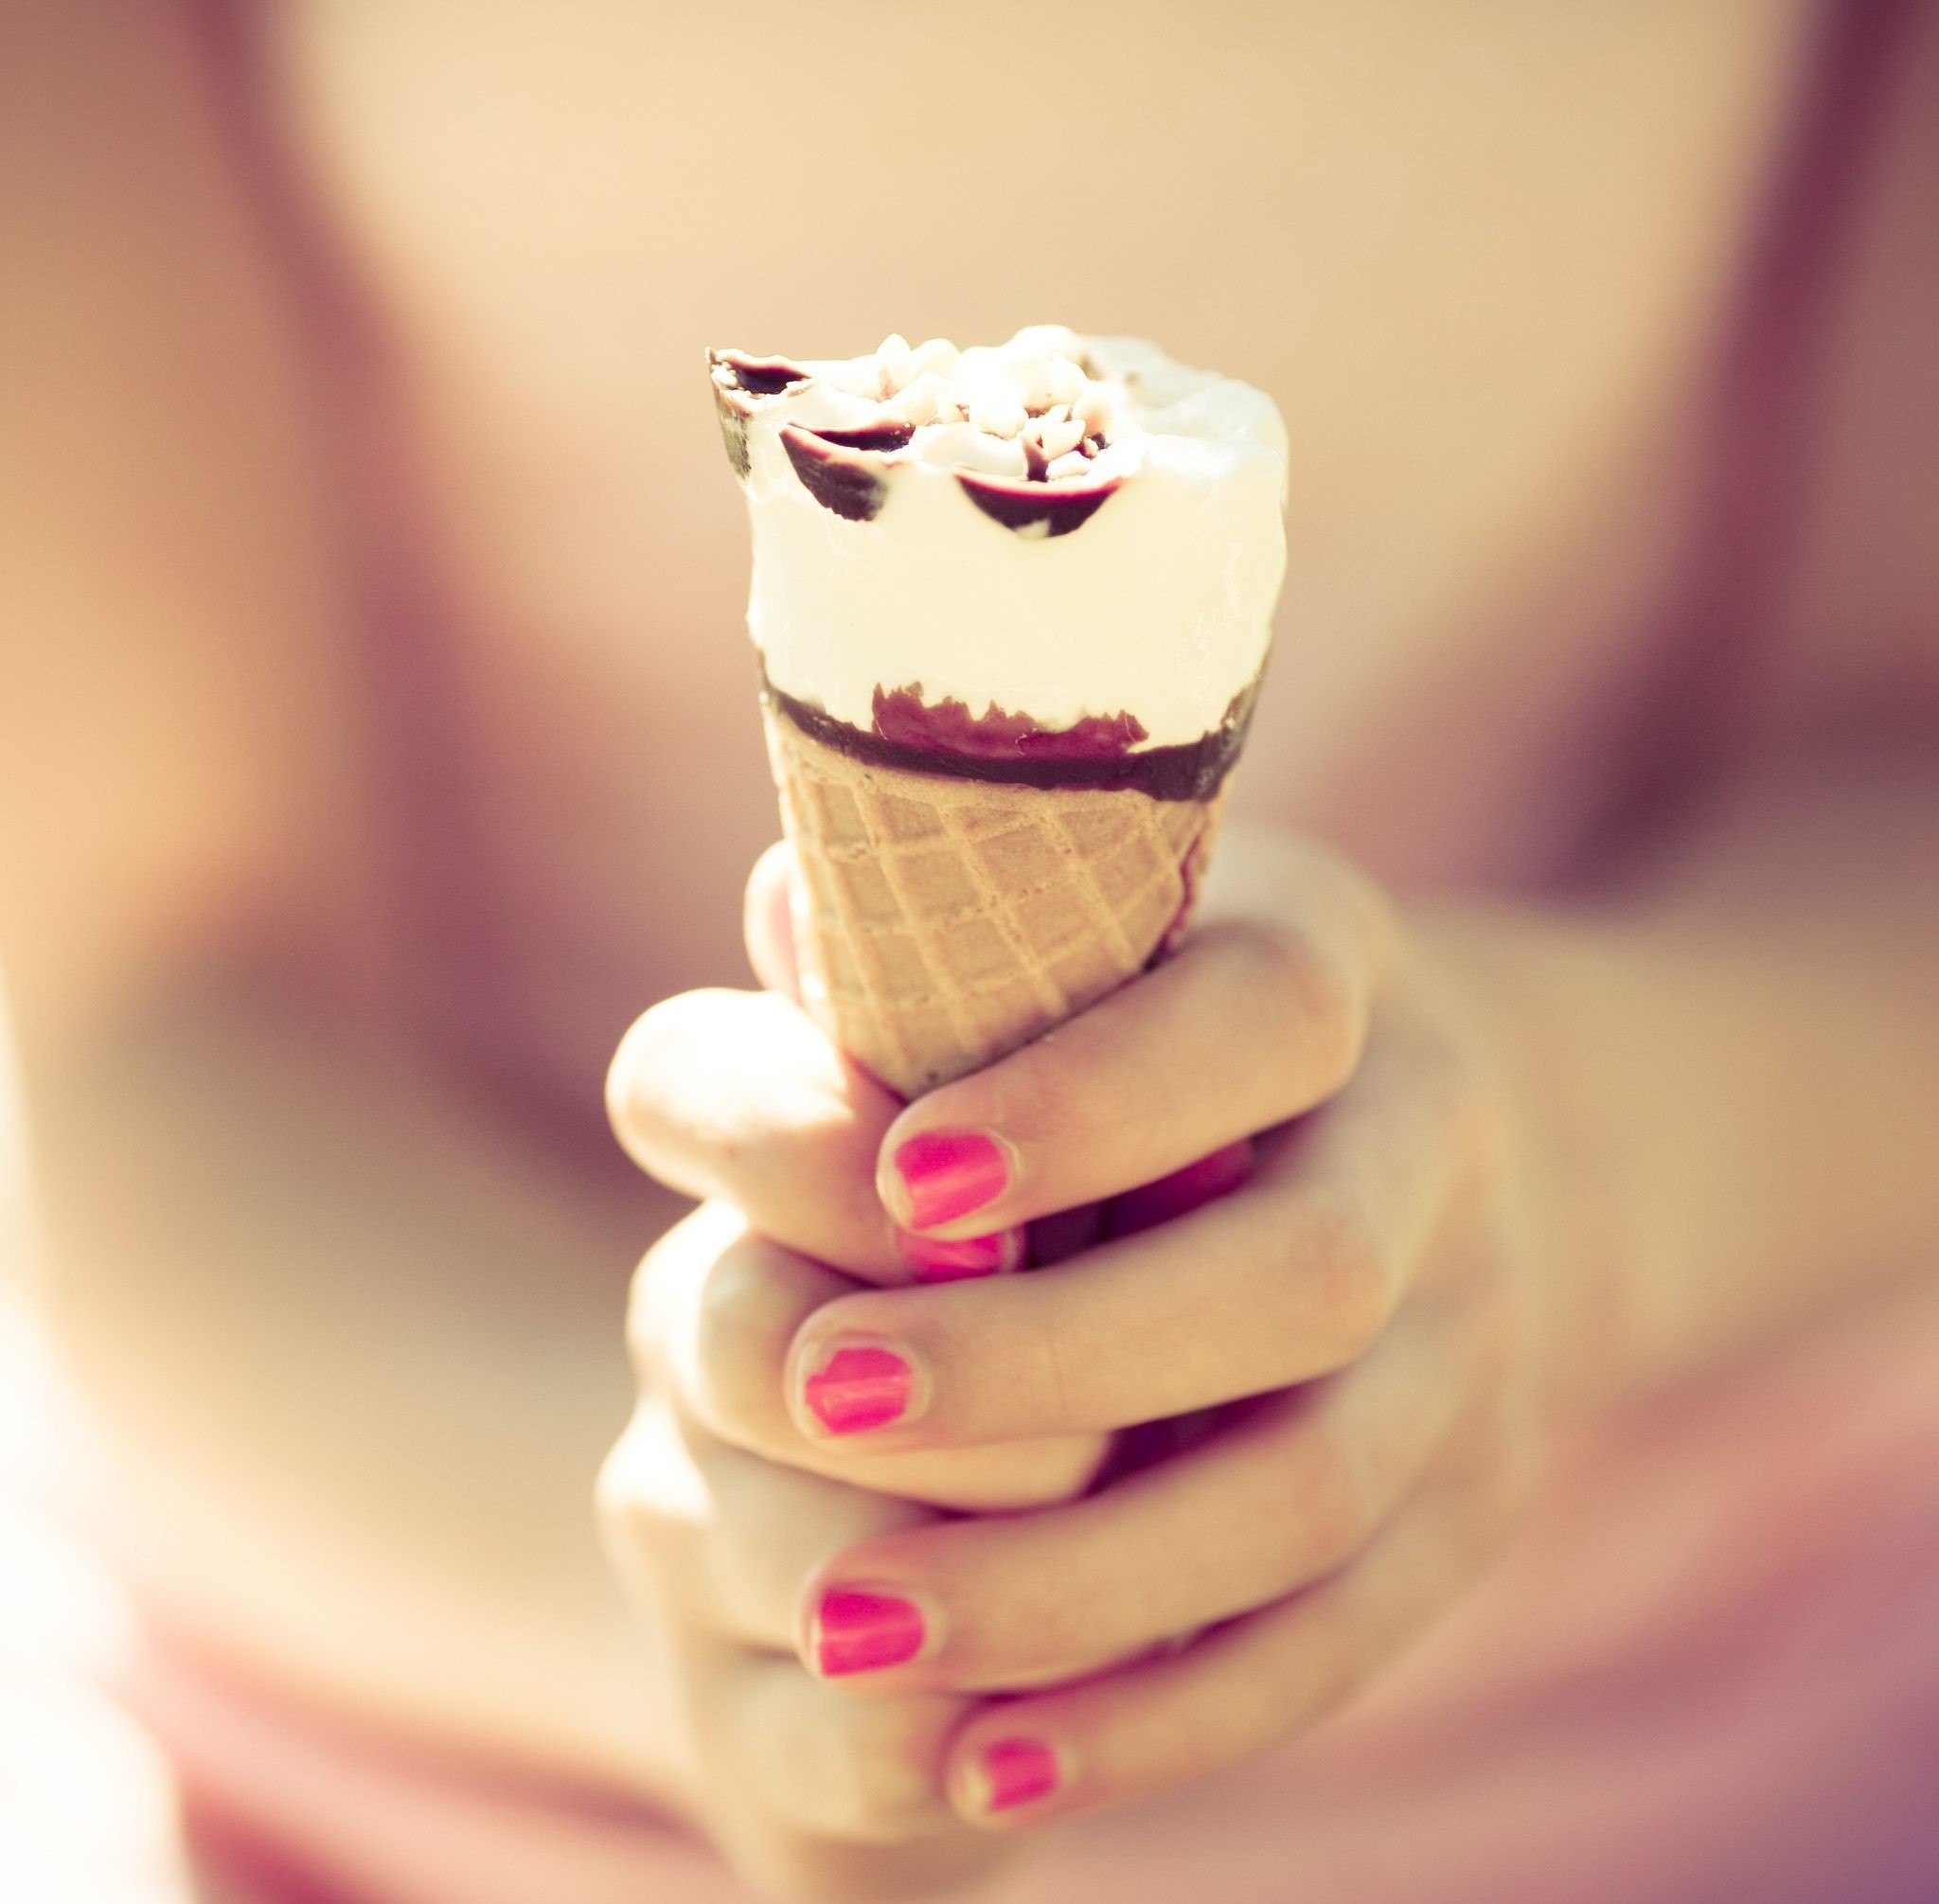 دانلود تصویر پربازدید از بستنی قیفی در دست دختر با لاک قرمز خوشگل